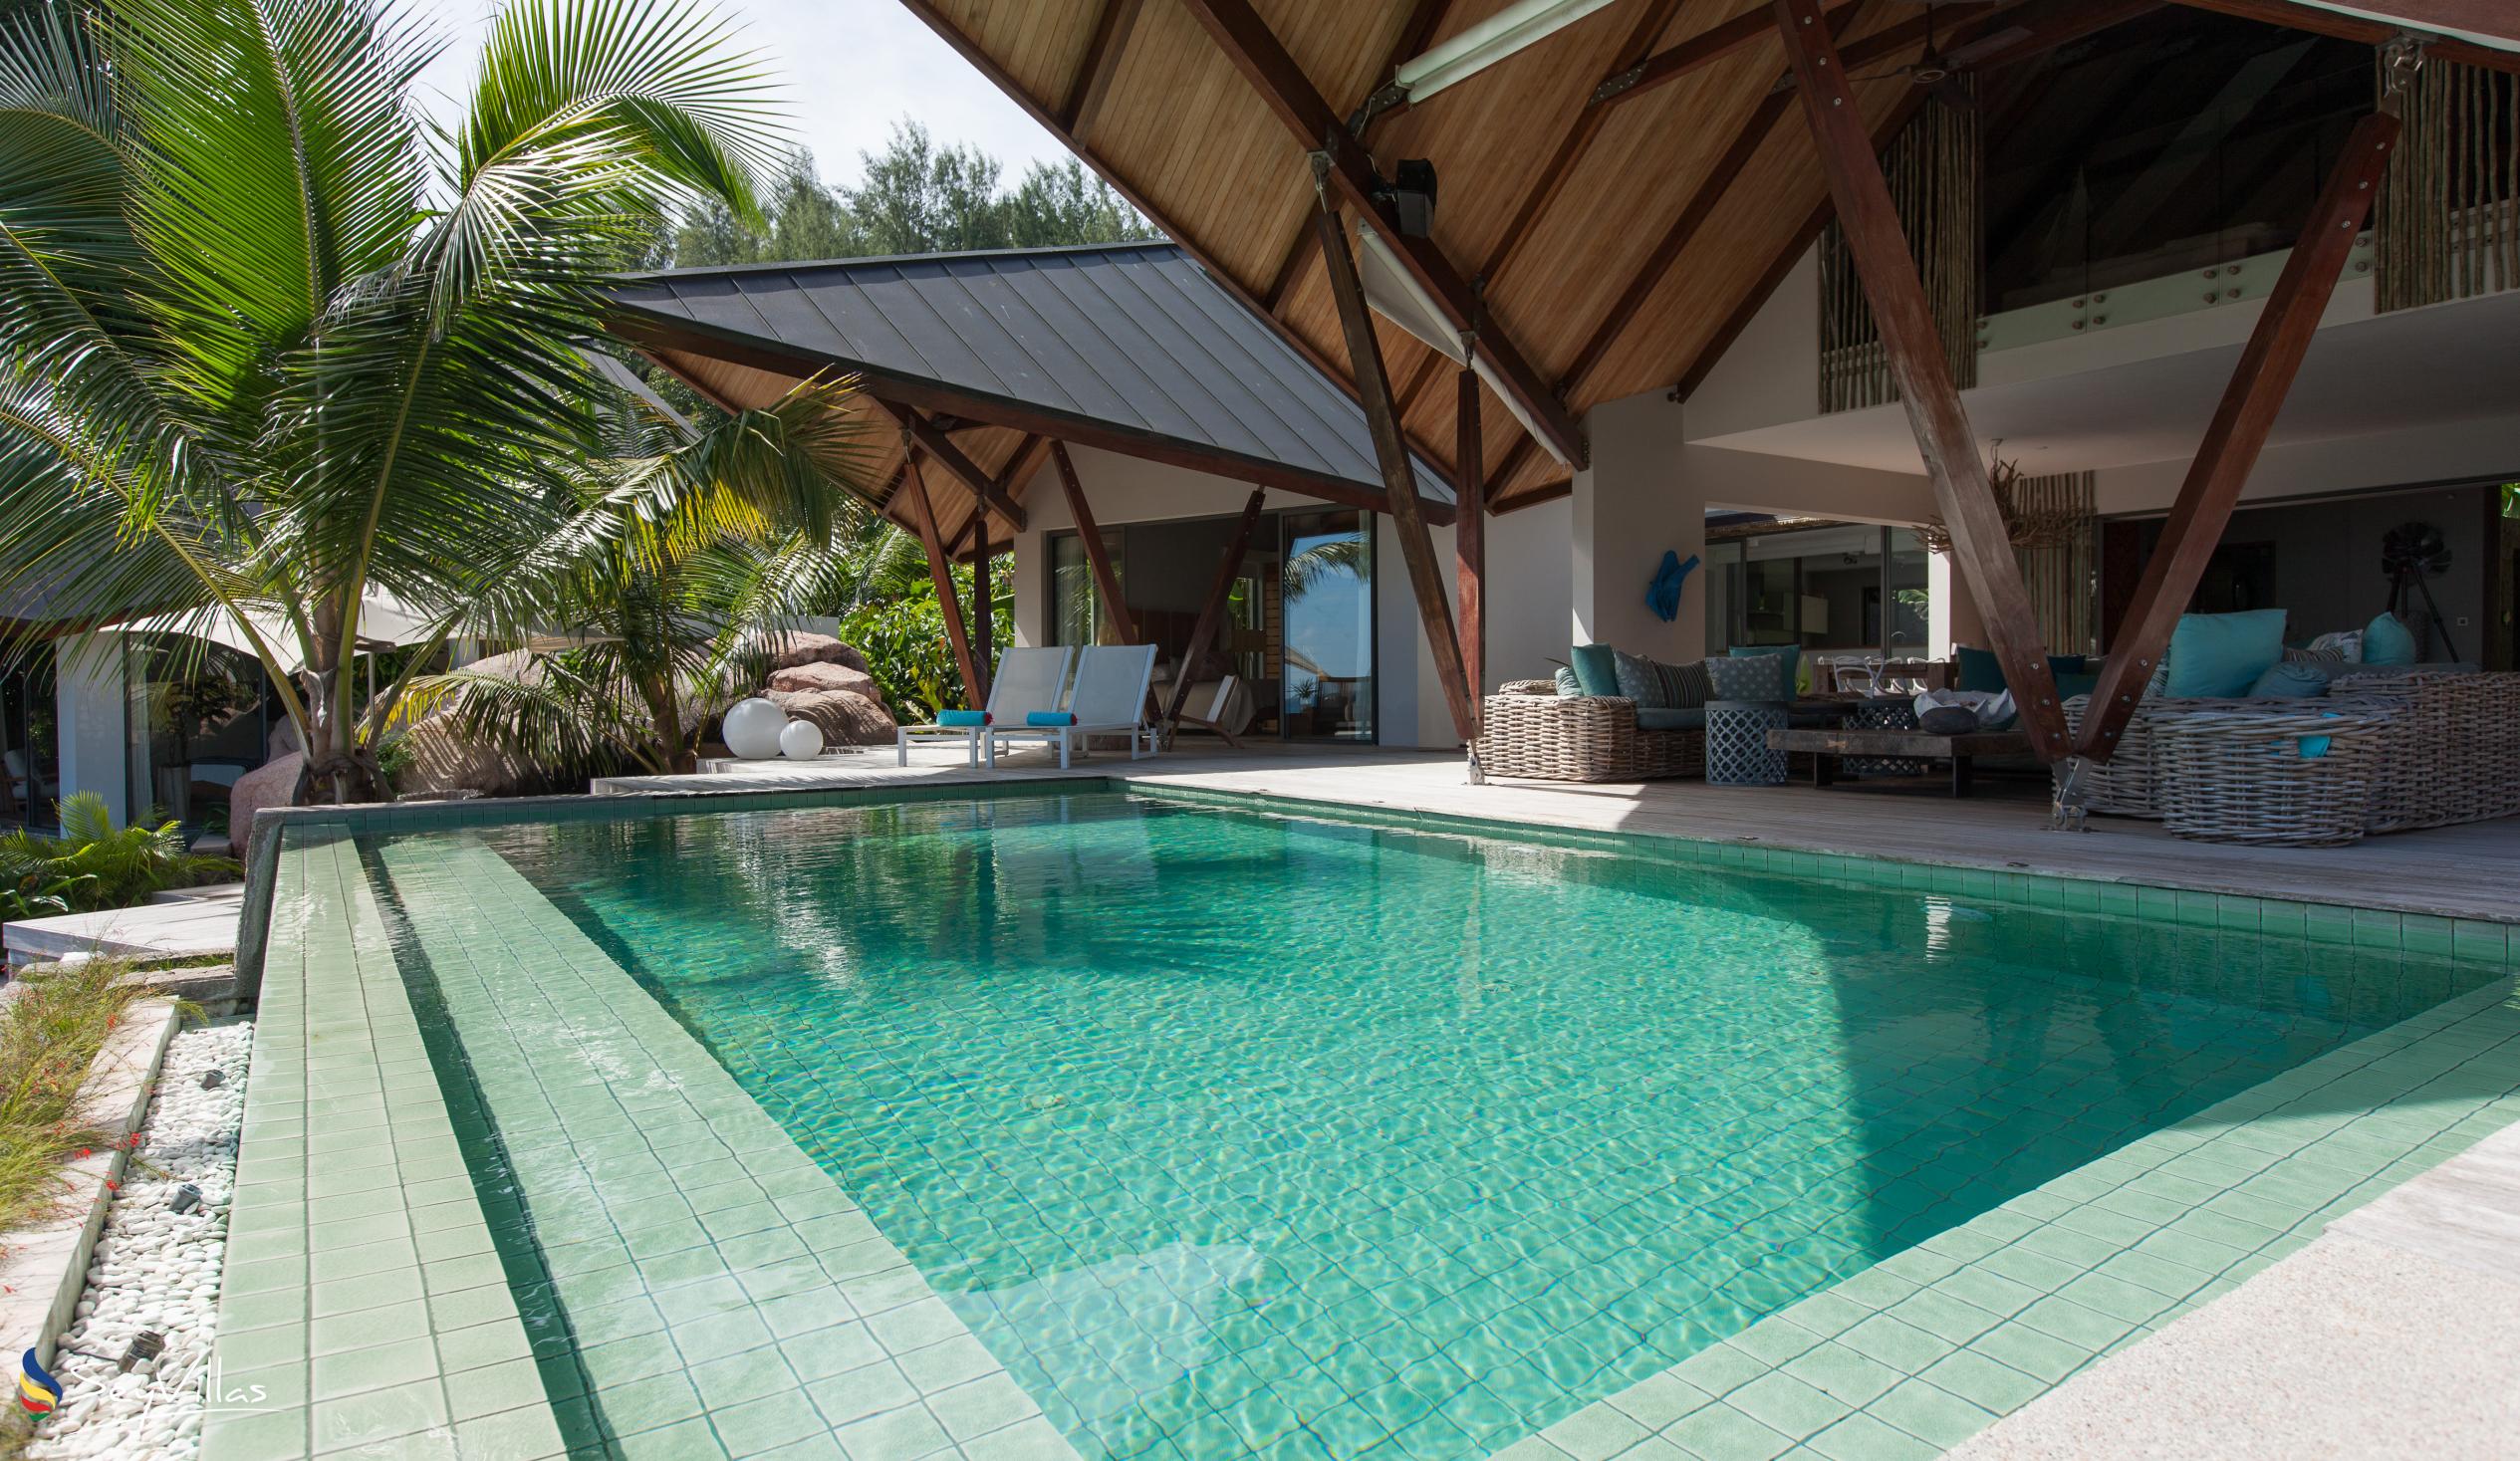 Foto 10: Villa Deckenia - Aussenbereich - Praslin (Seychellen)